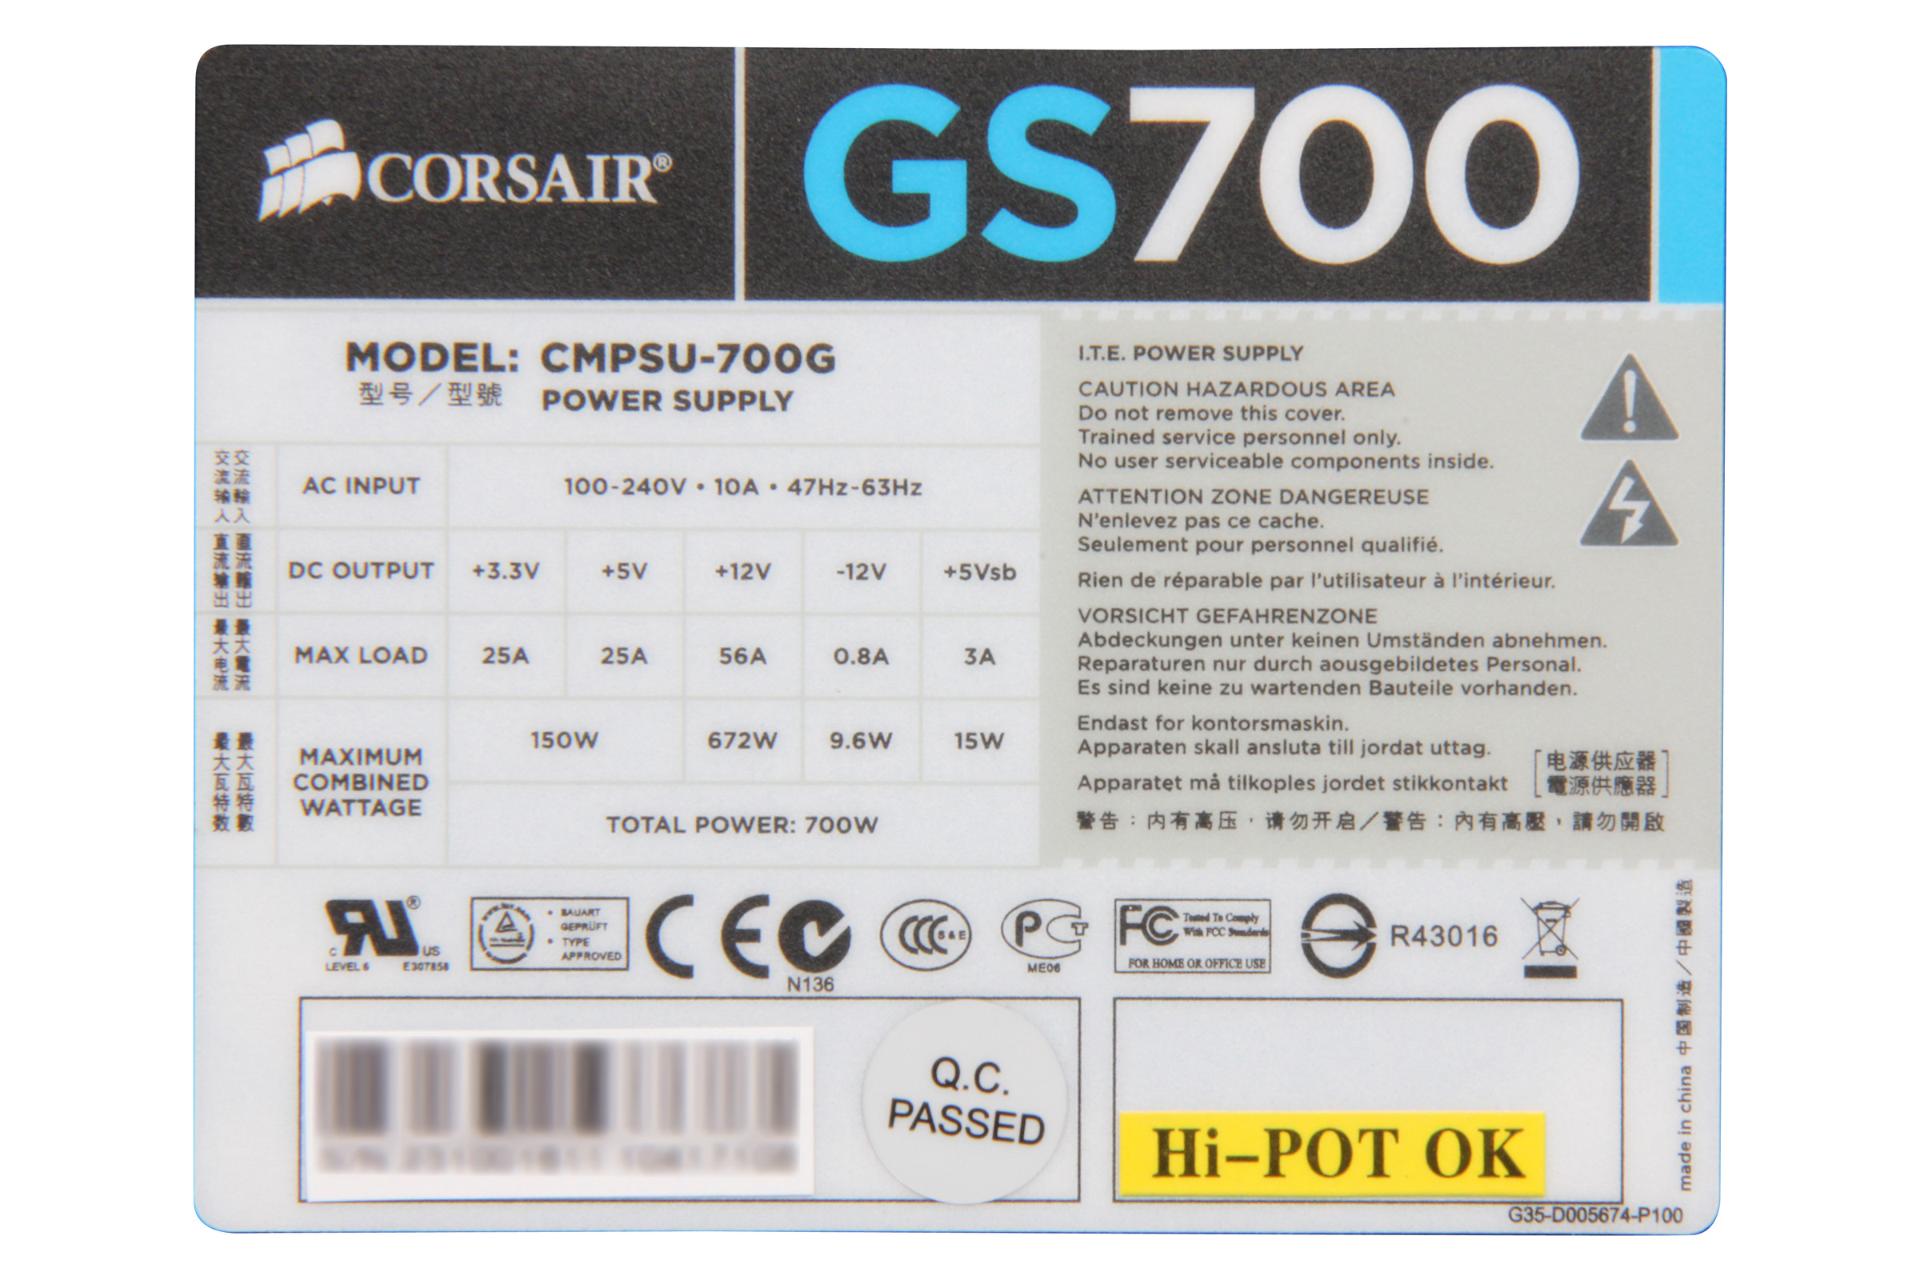 برچسب پاور کامپیوتر کورسیر GS700 CMPSU-700G با توان 700 وات